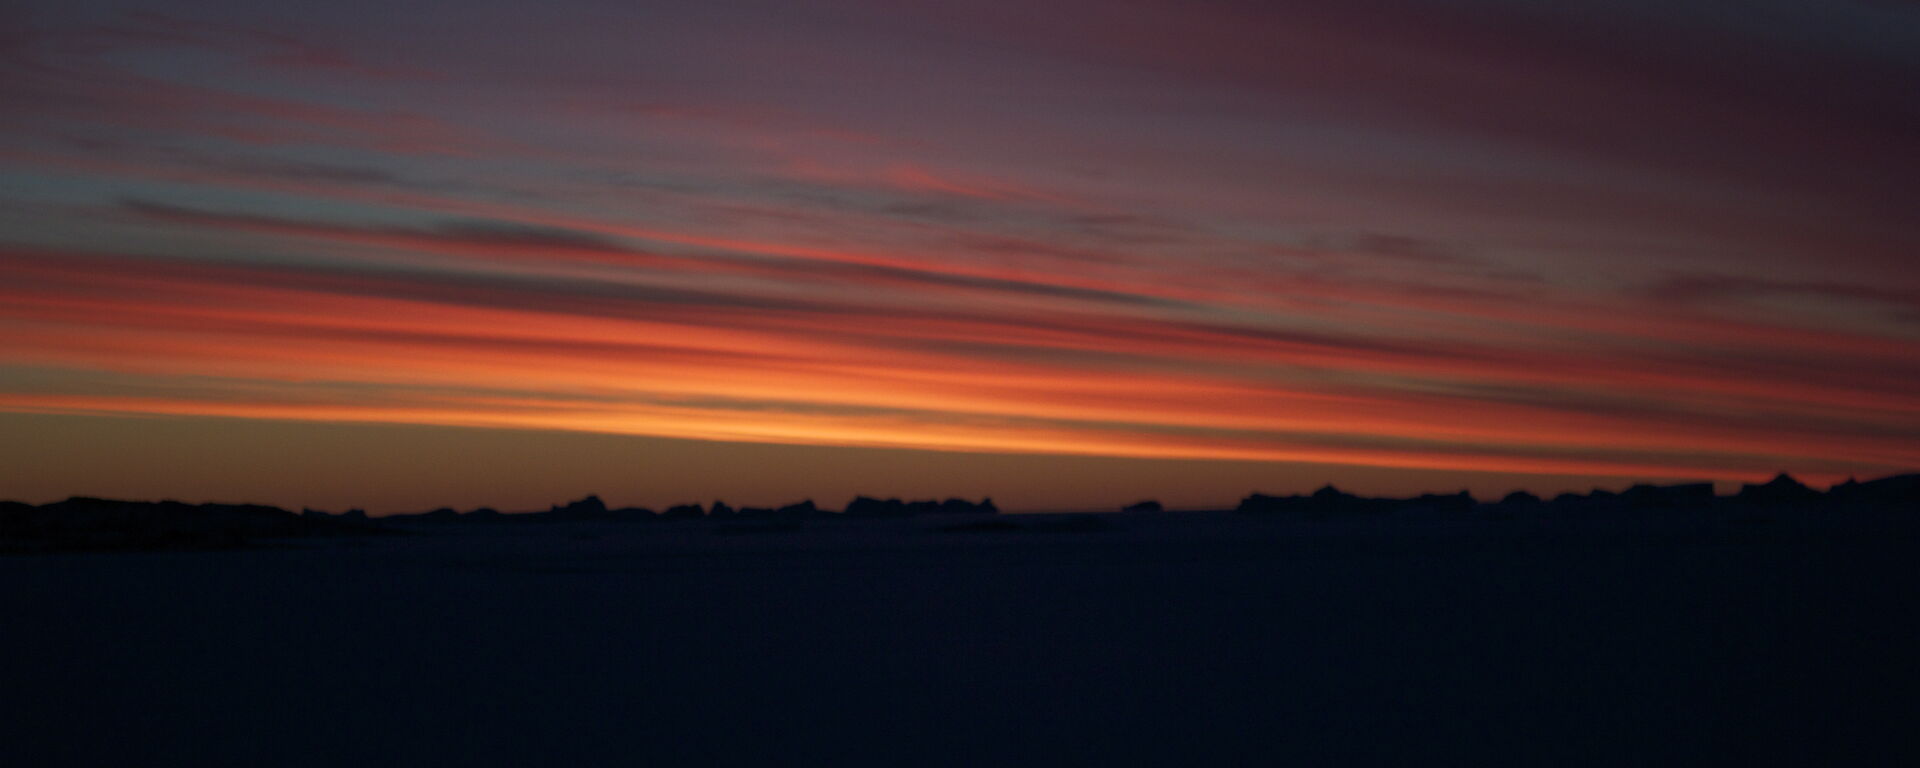 Davis sunset in April